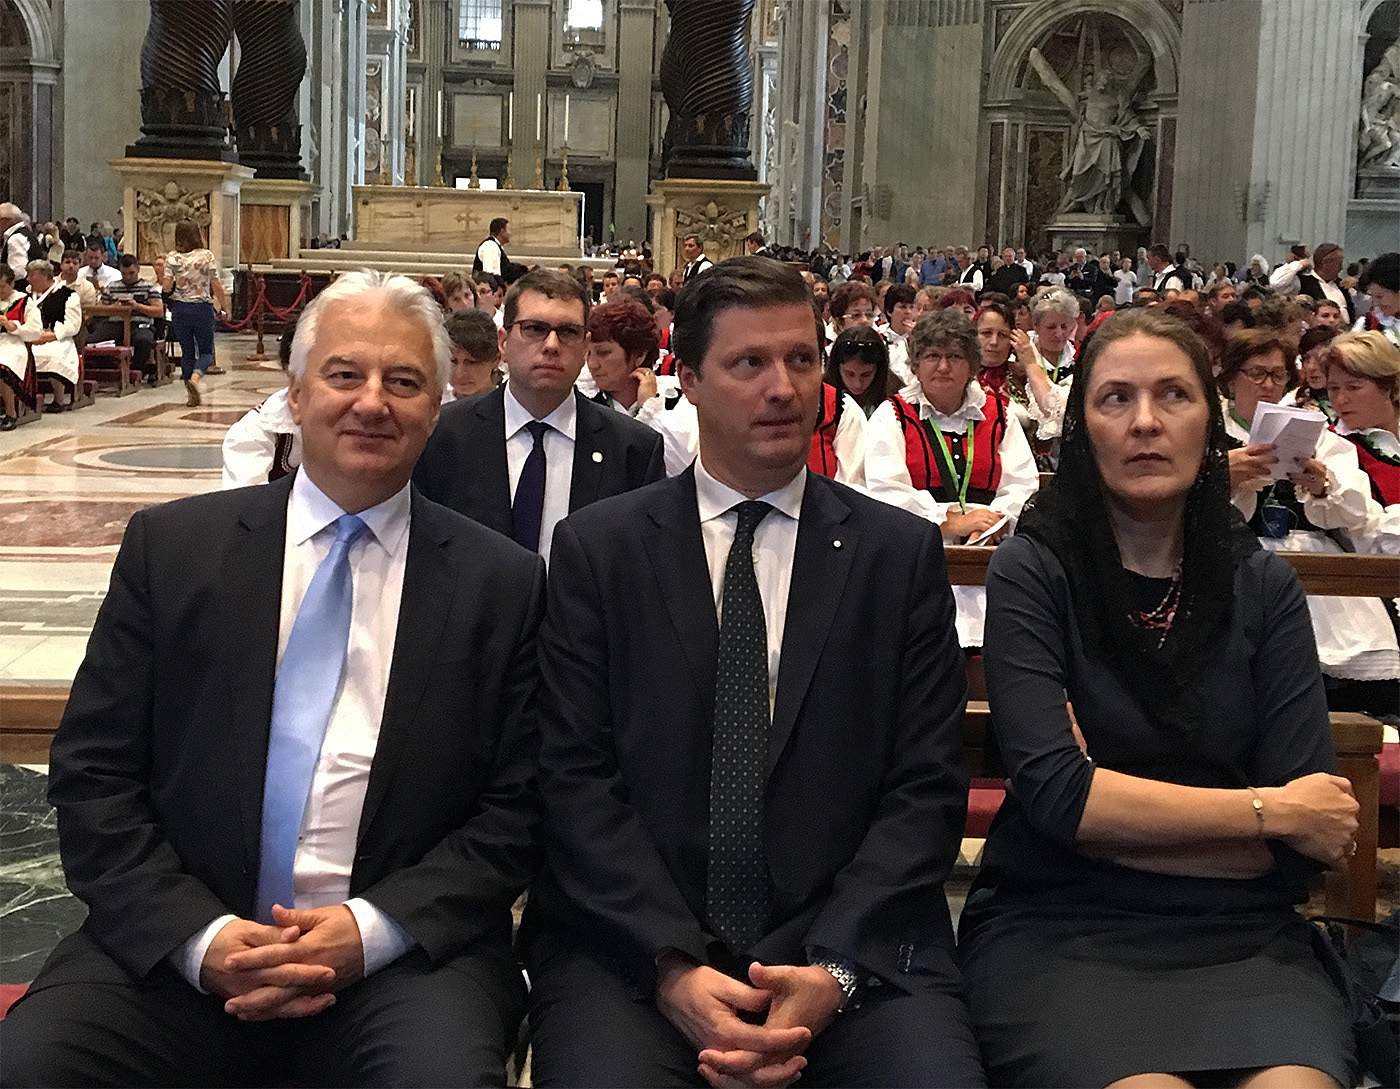 Deputy PM in Vatican